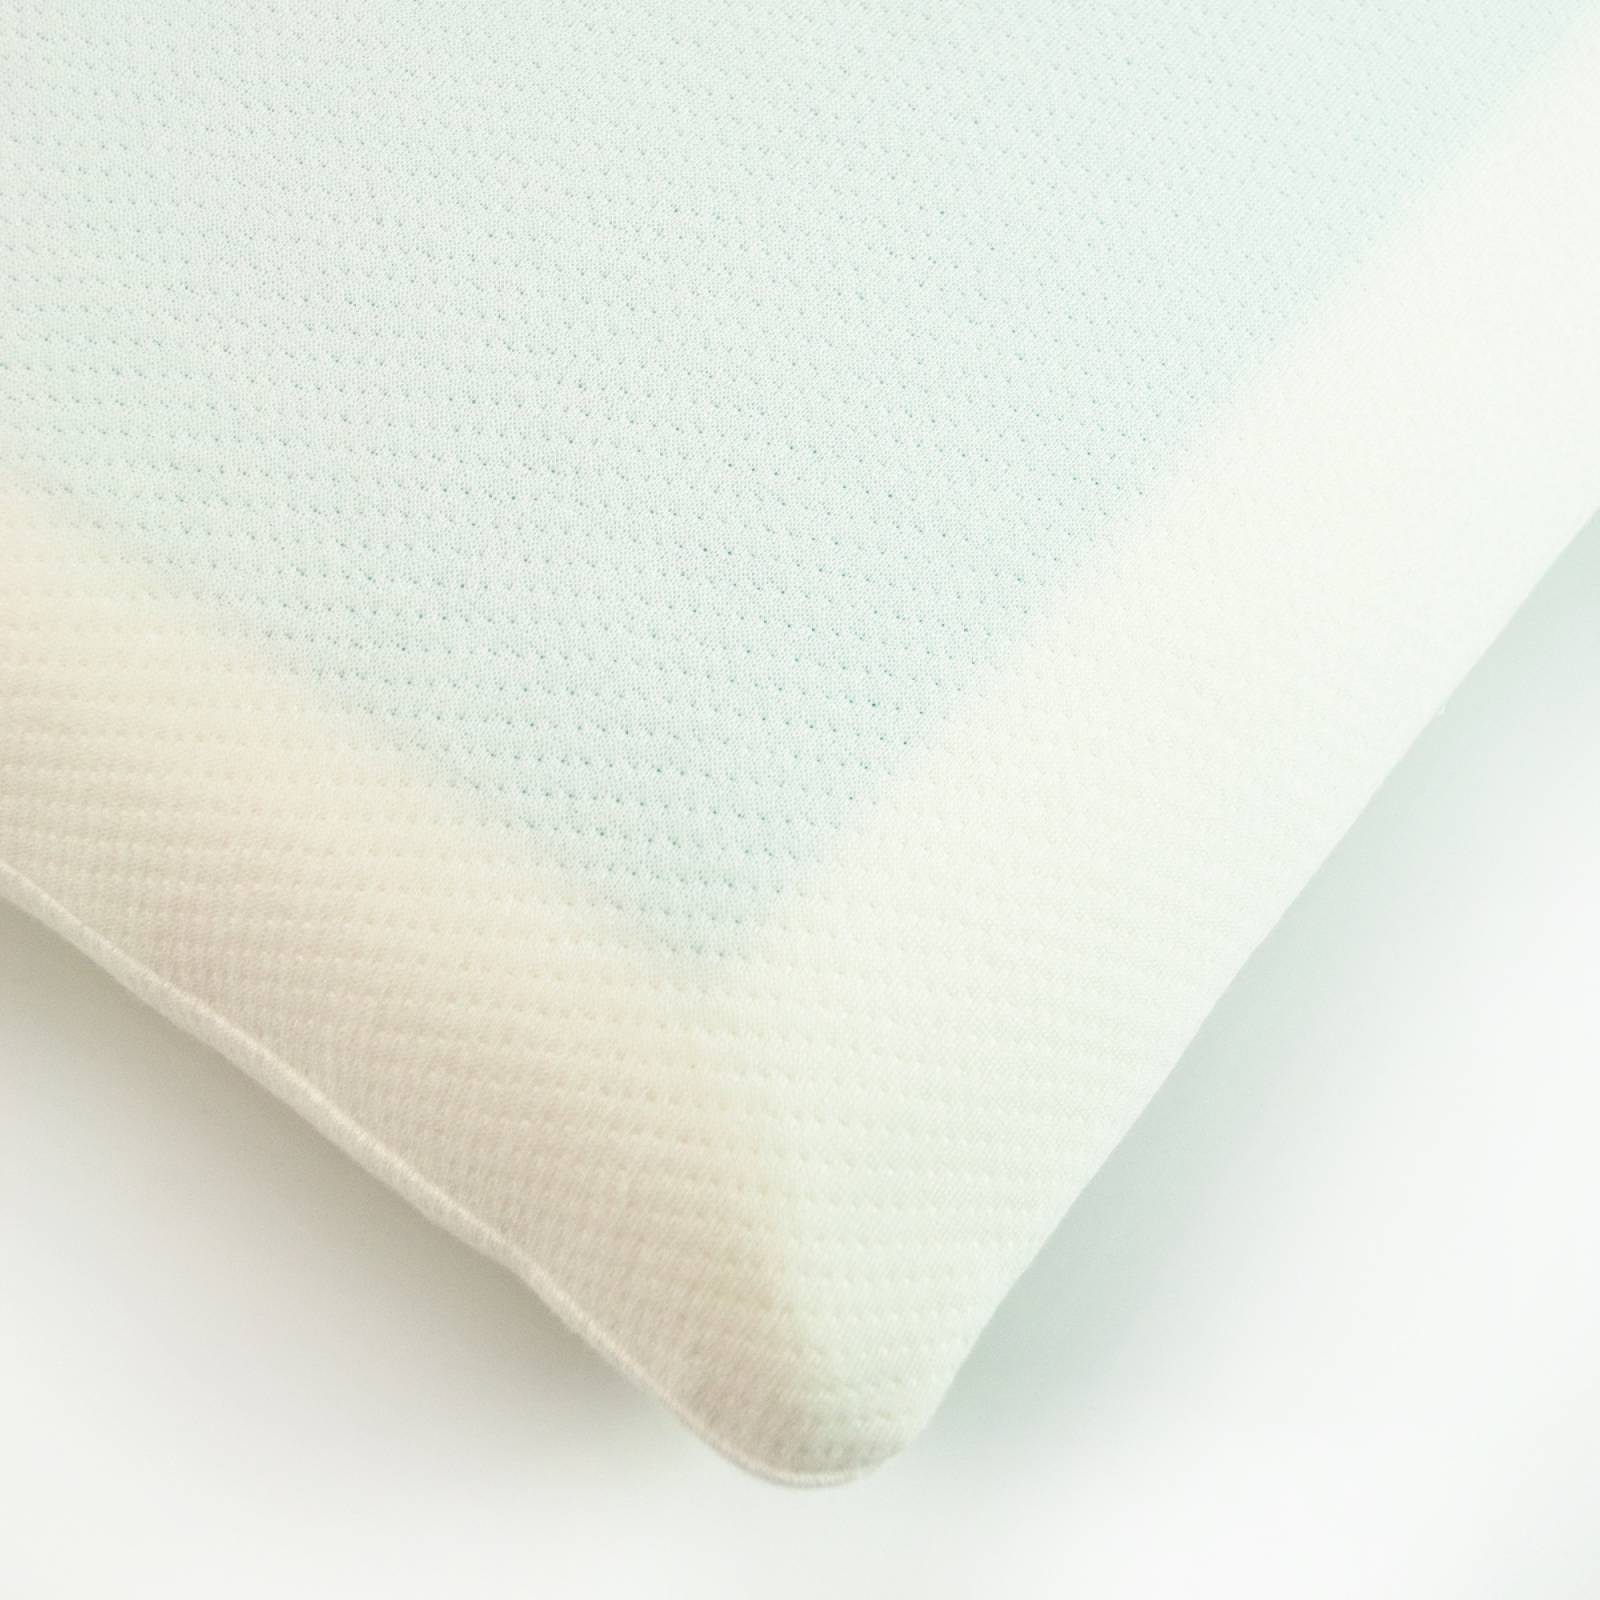 Almohada Spring Air Cool gel Pillow - Muy Firme Estándar